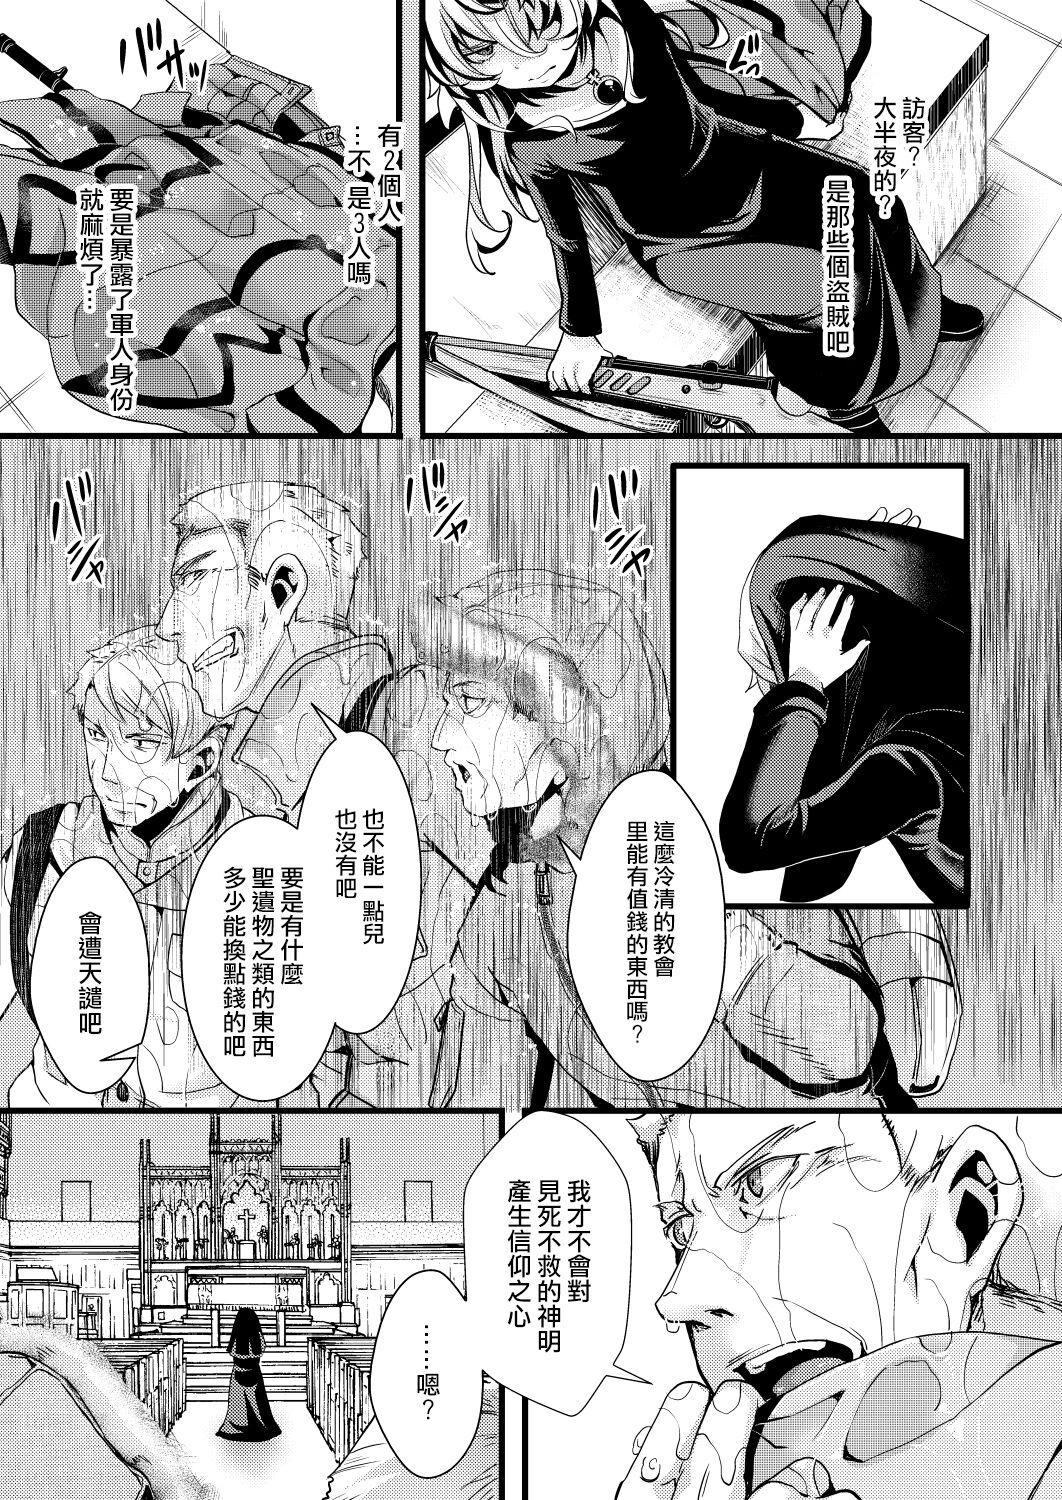 Gostoso Sister Fuku na Tanya-chan no Hanashi - Youjo senki | saga of tanya the evil Heels - Page 4